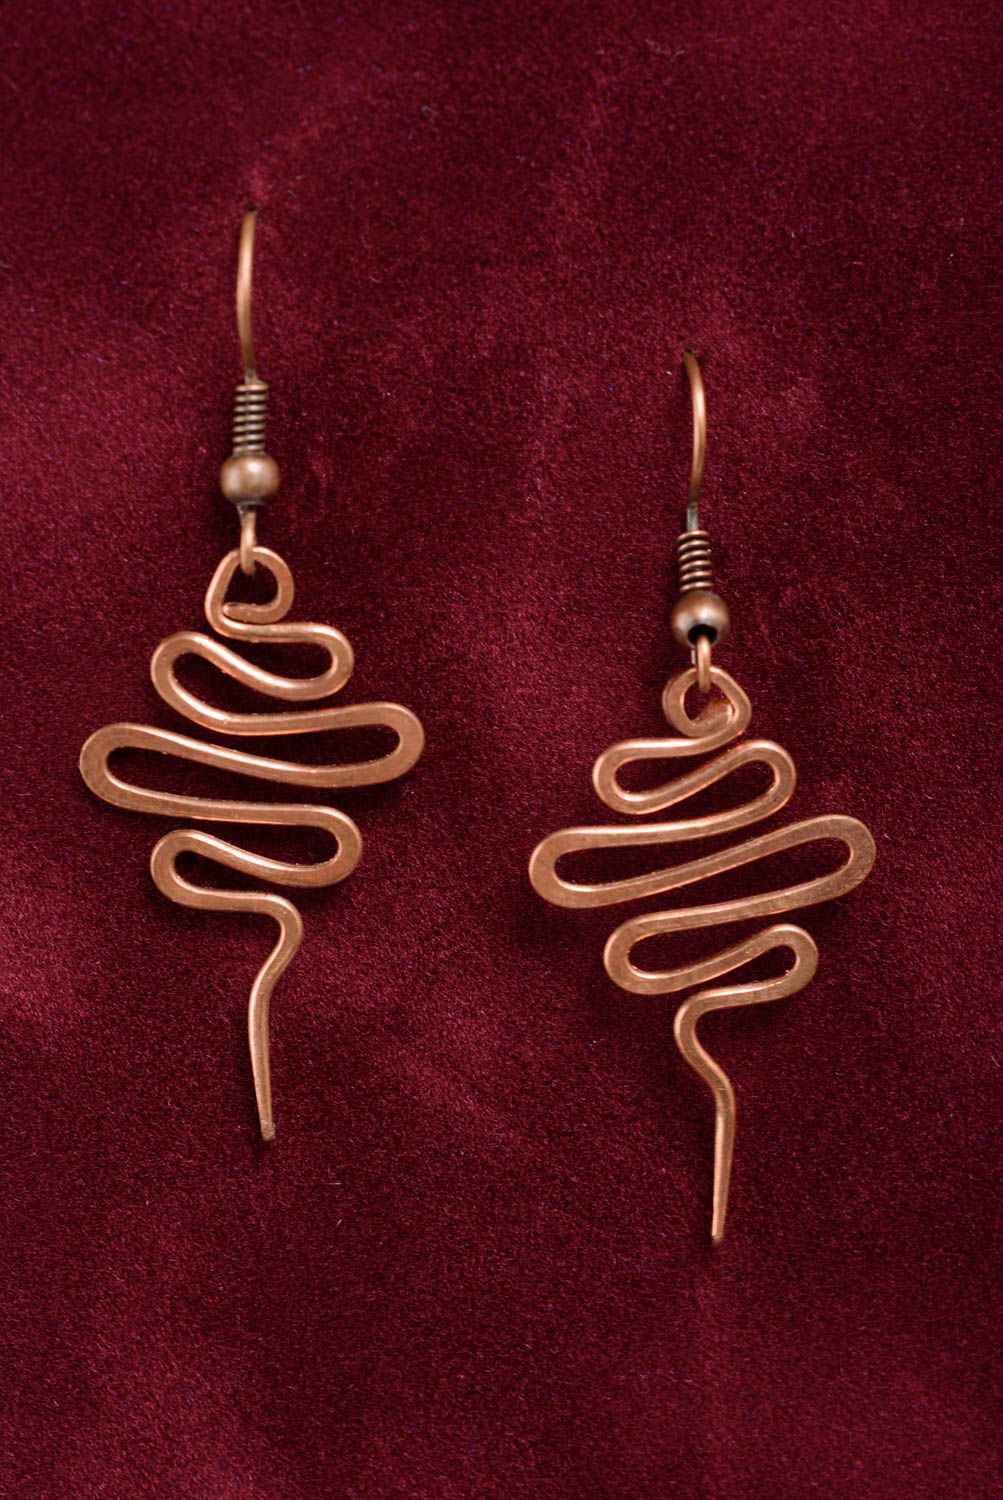 Massive unusual earrings handmade copper earrings wire wrap accessories photo 1